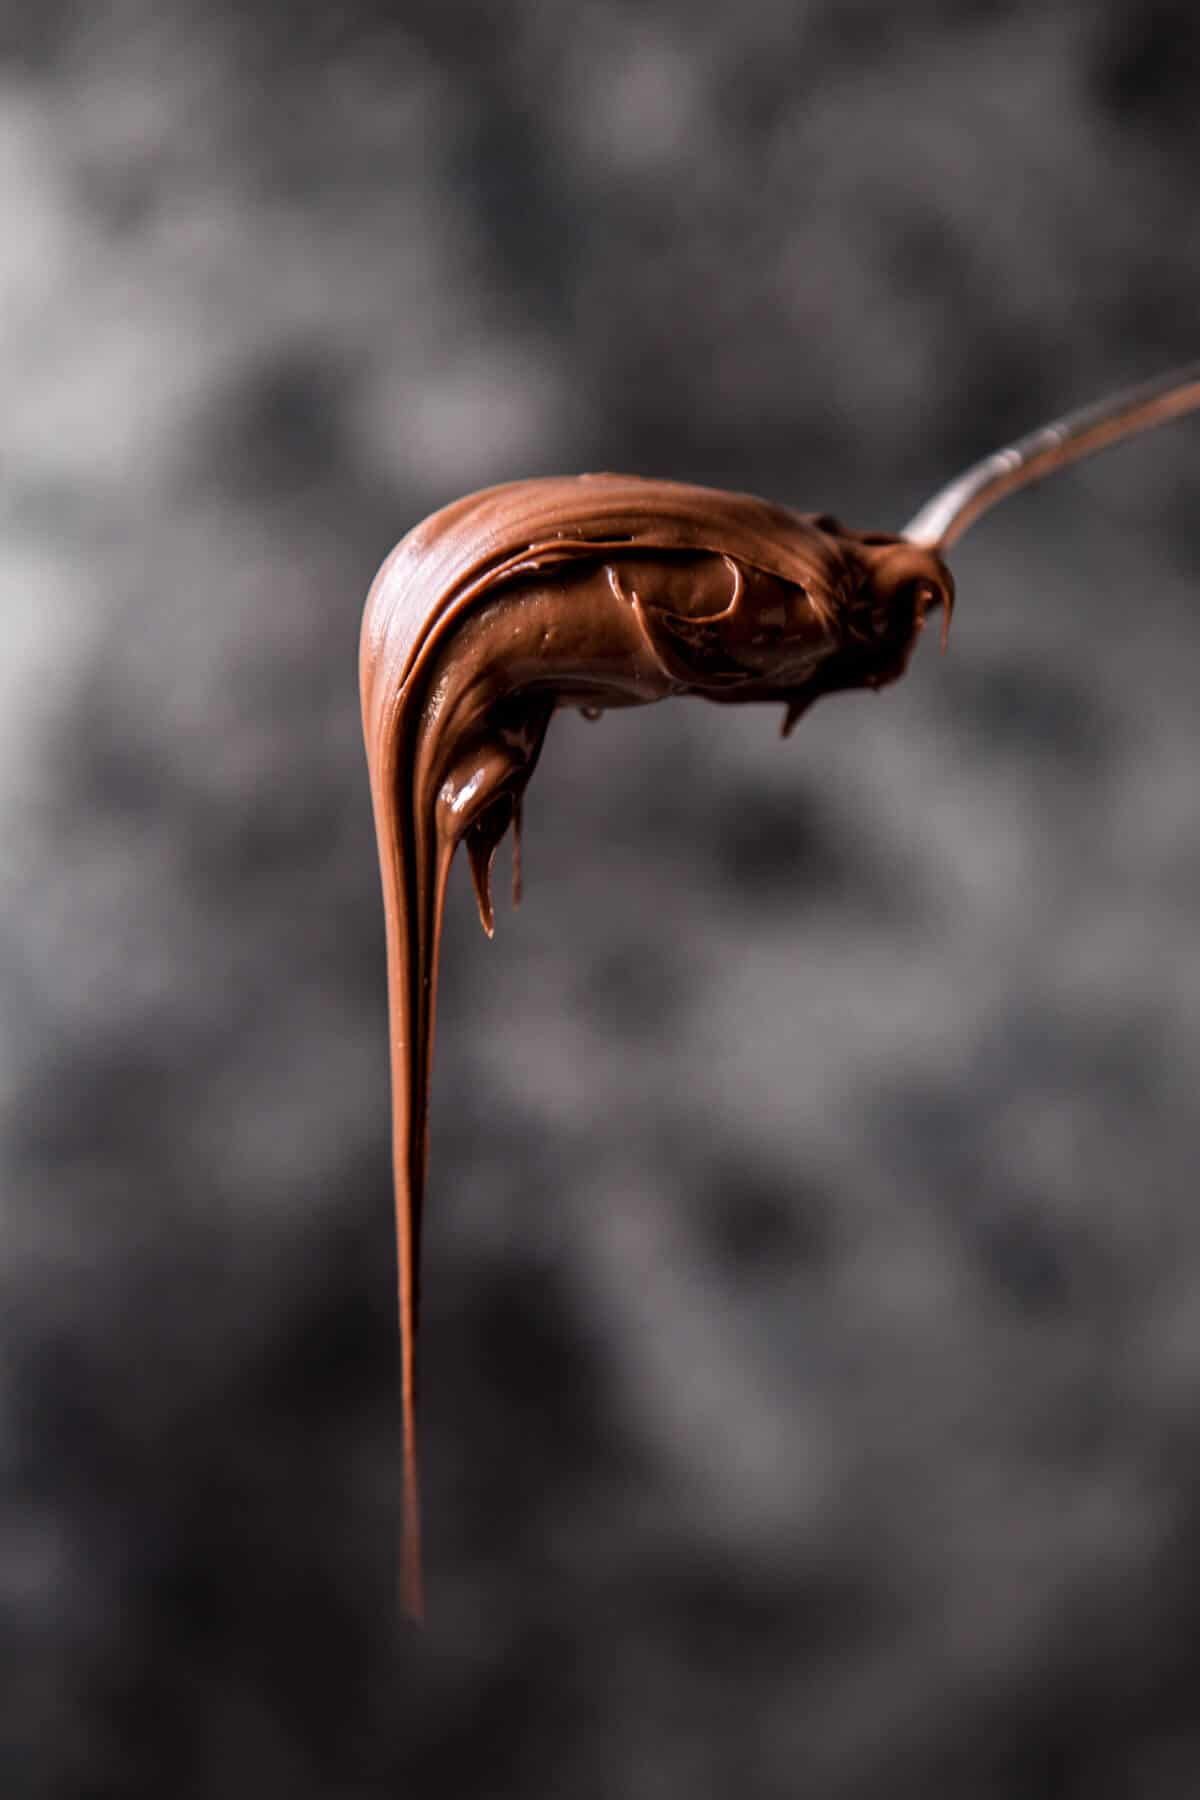 Cinnamon Sugar Nutella Quesadilla | halfbakedharvest.com @hbharvest